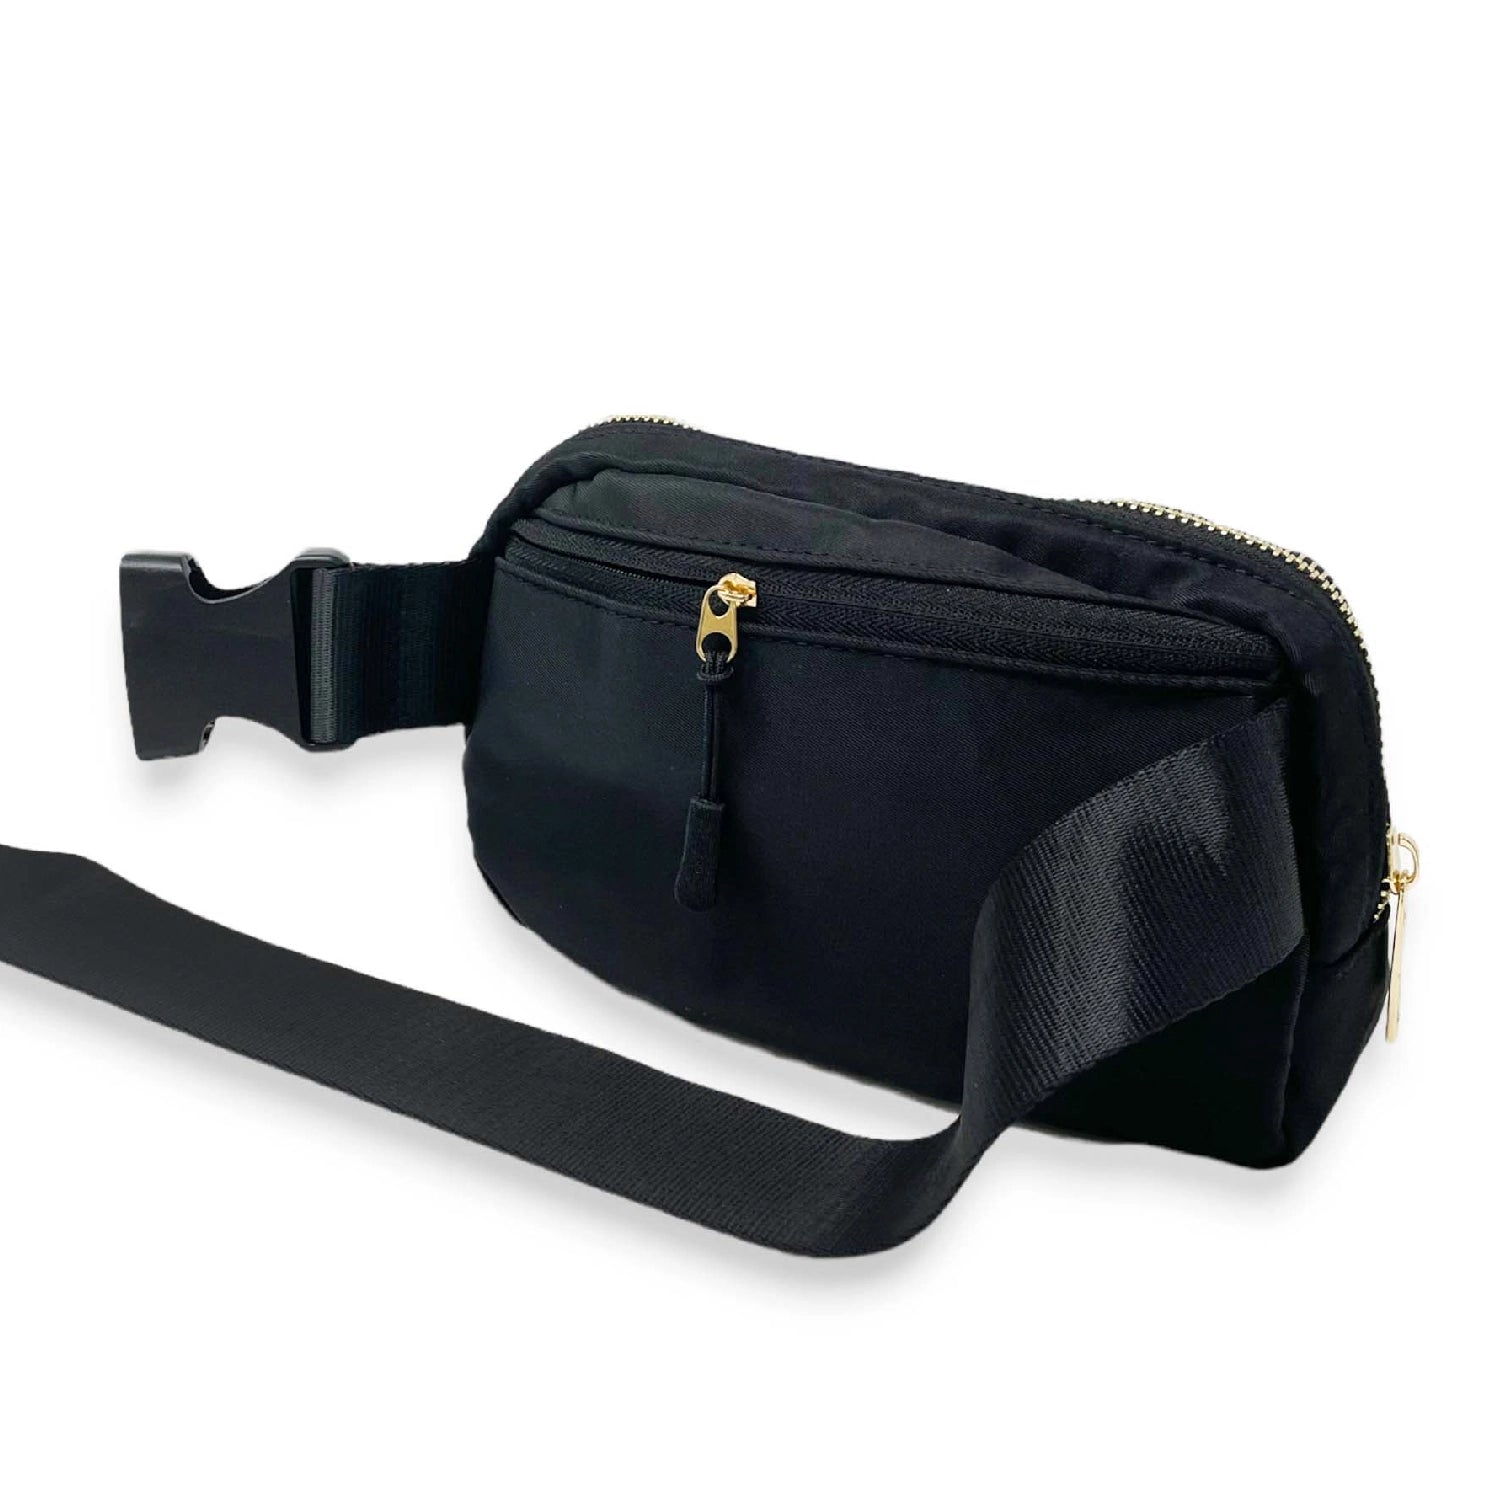 All You Need Belt Bag + Wallet - Black